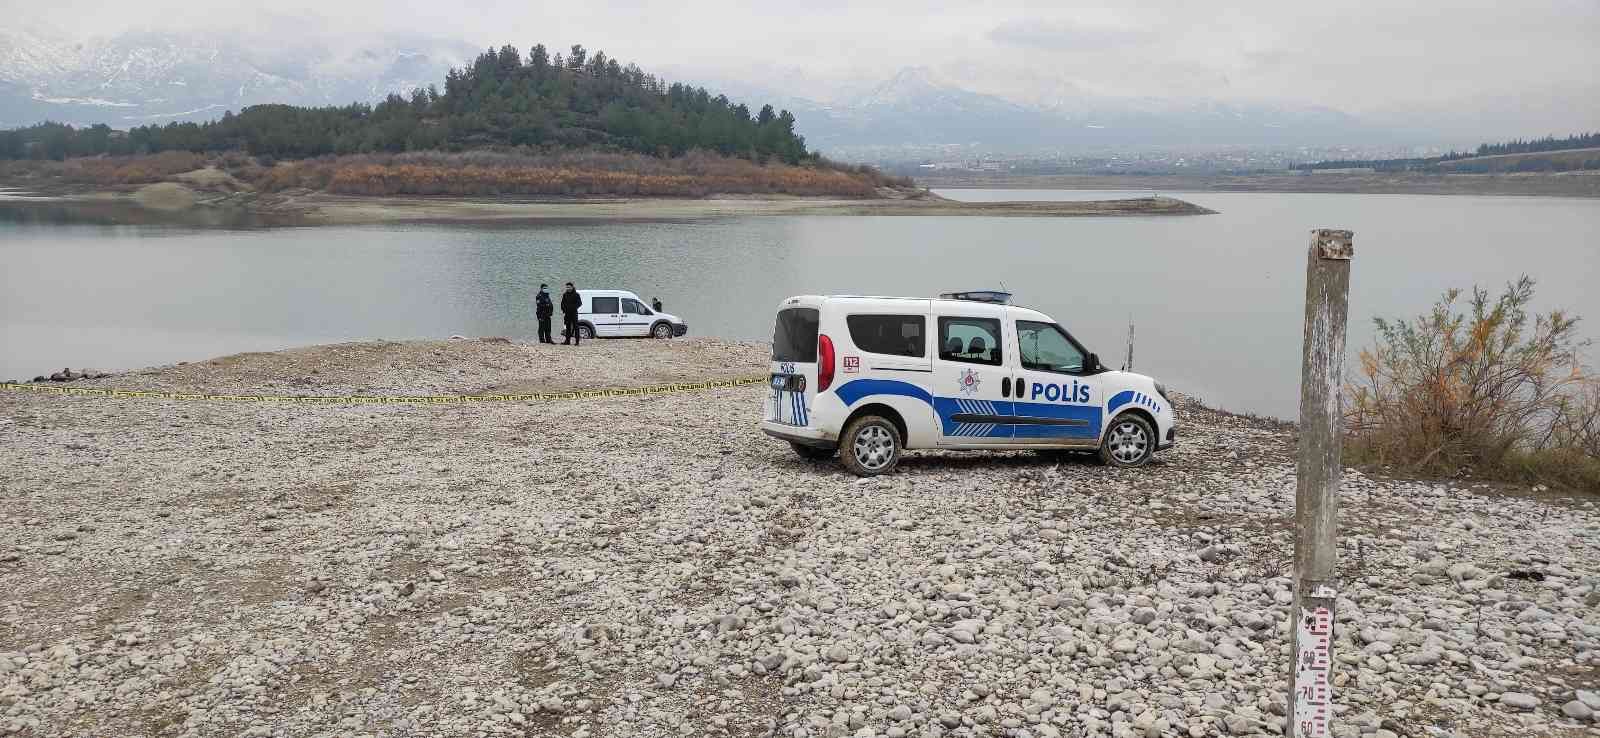 Barajda erkek cesedi bulundu #denizli